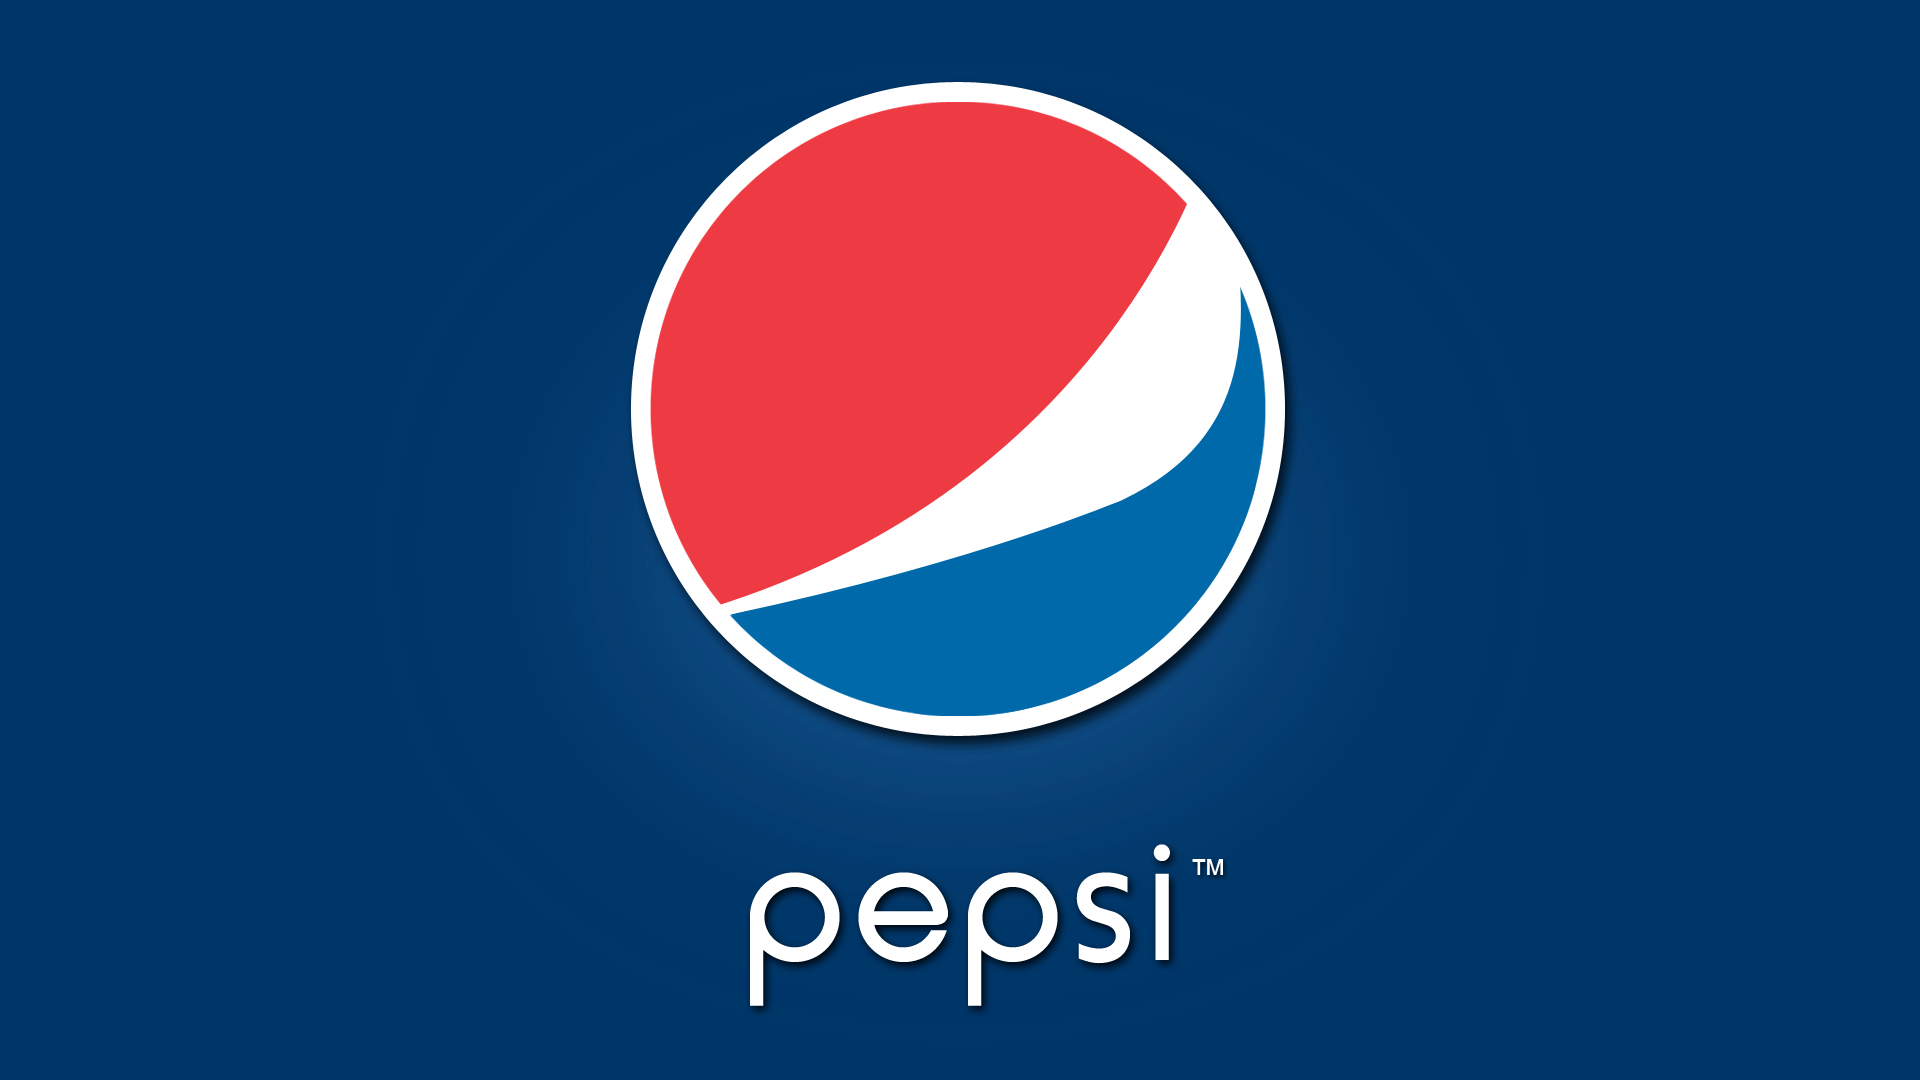 Pepsi Logo Wallpapers - Wallpaper Cave